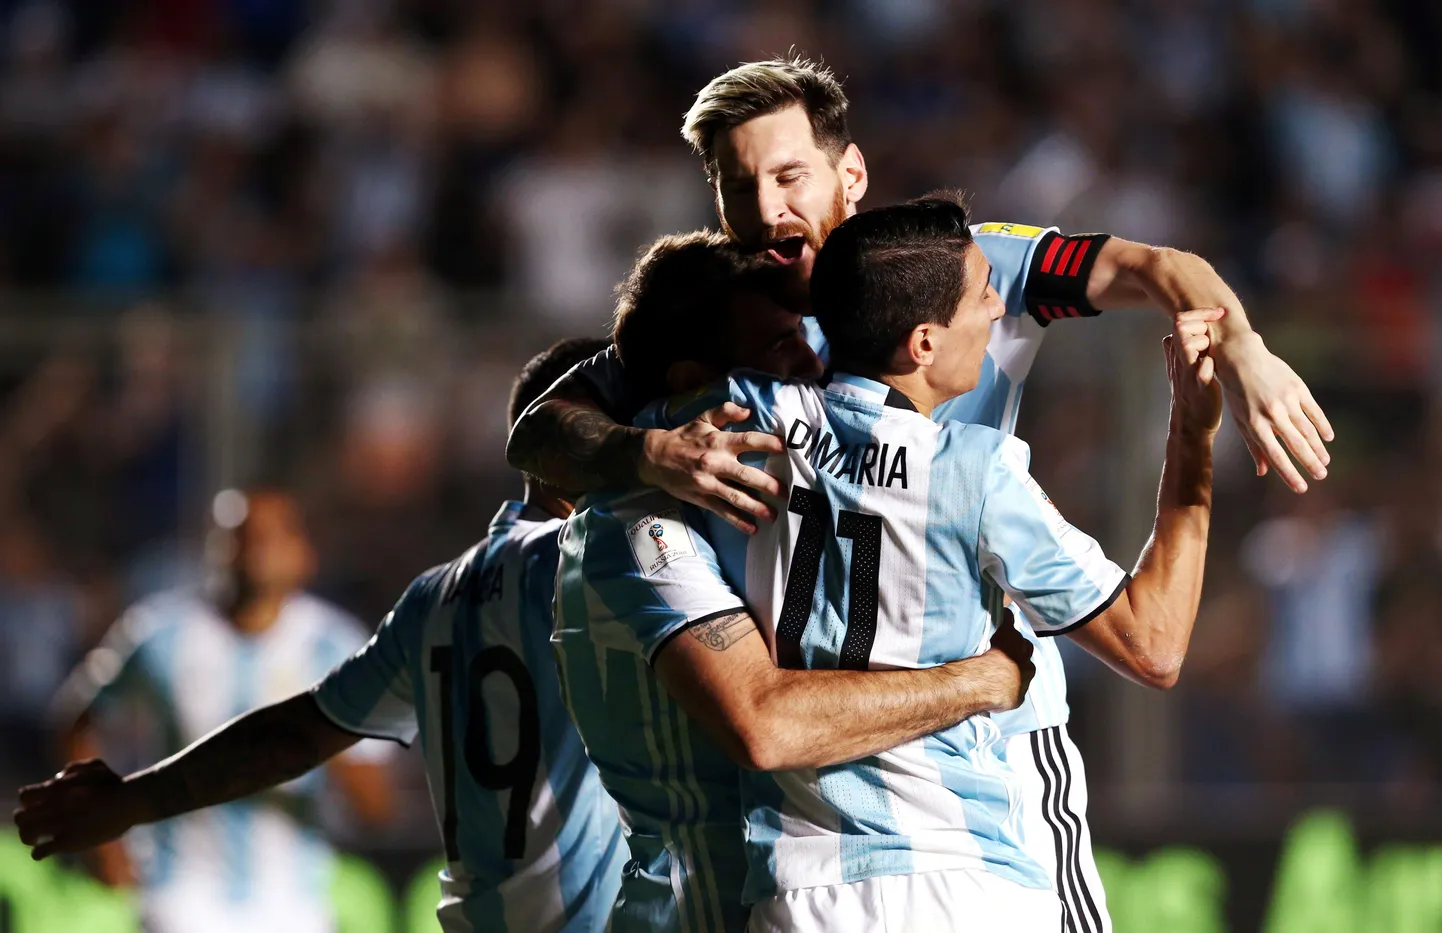 Argentina koondis väravat tähistamas.